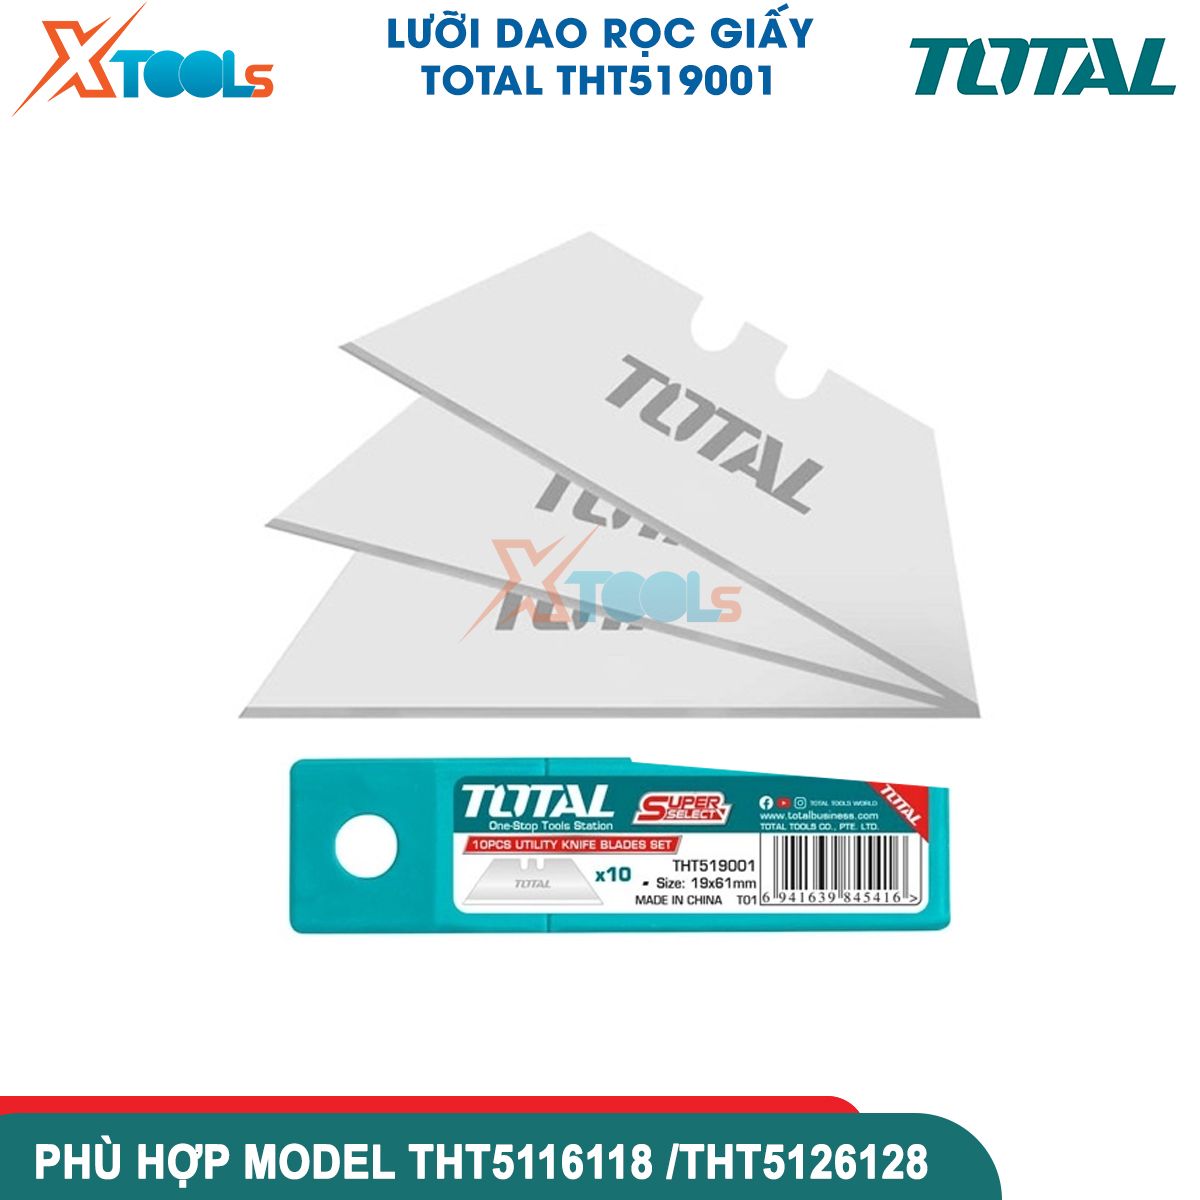 Bộ 10 lưỡi dao rọc giấy siêu bén TOTAL THT519001 61X19mm bền chắc chống gãy cắt bìa caton decal giấy dán tường khắc gỗ XTOOLs